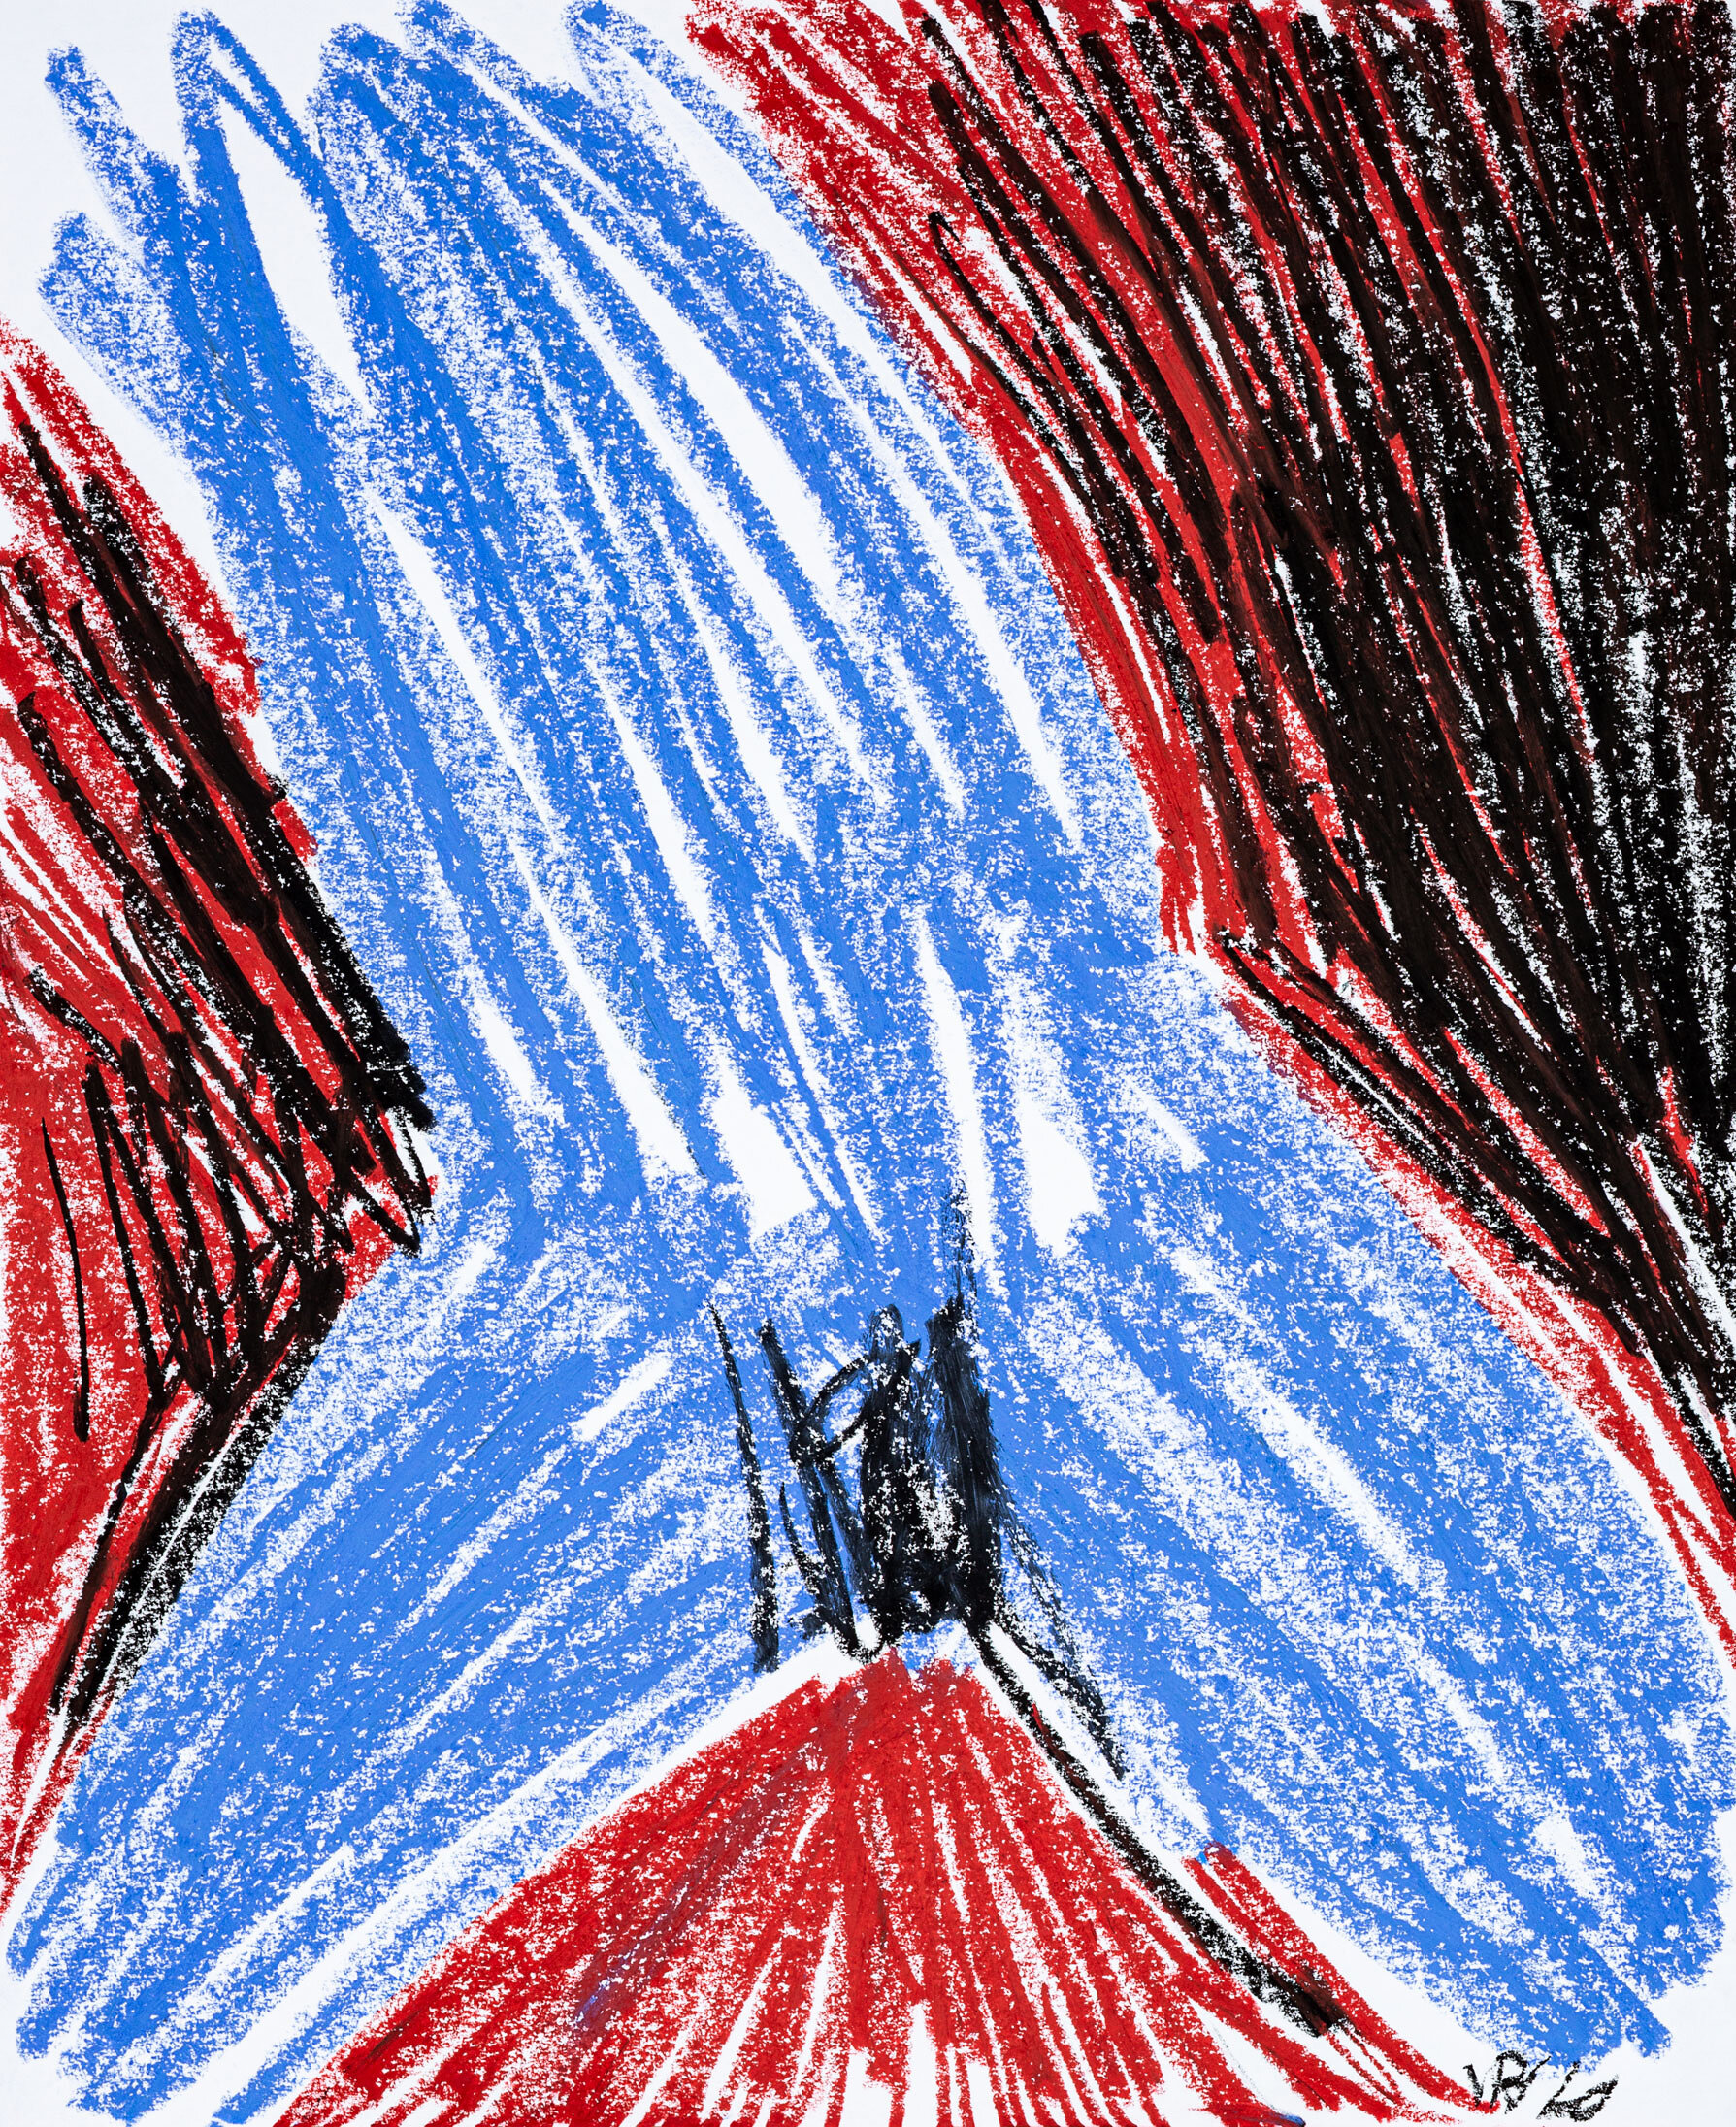 Blue Figure, 2020 - oil pastel on paper, 14x17in